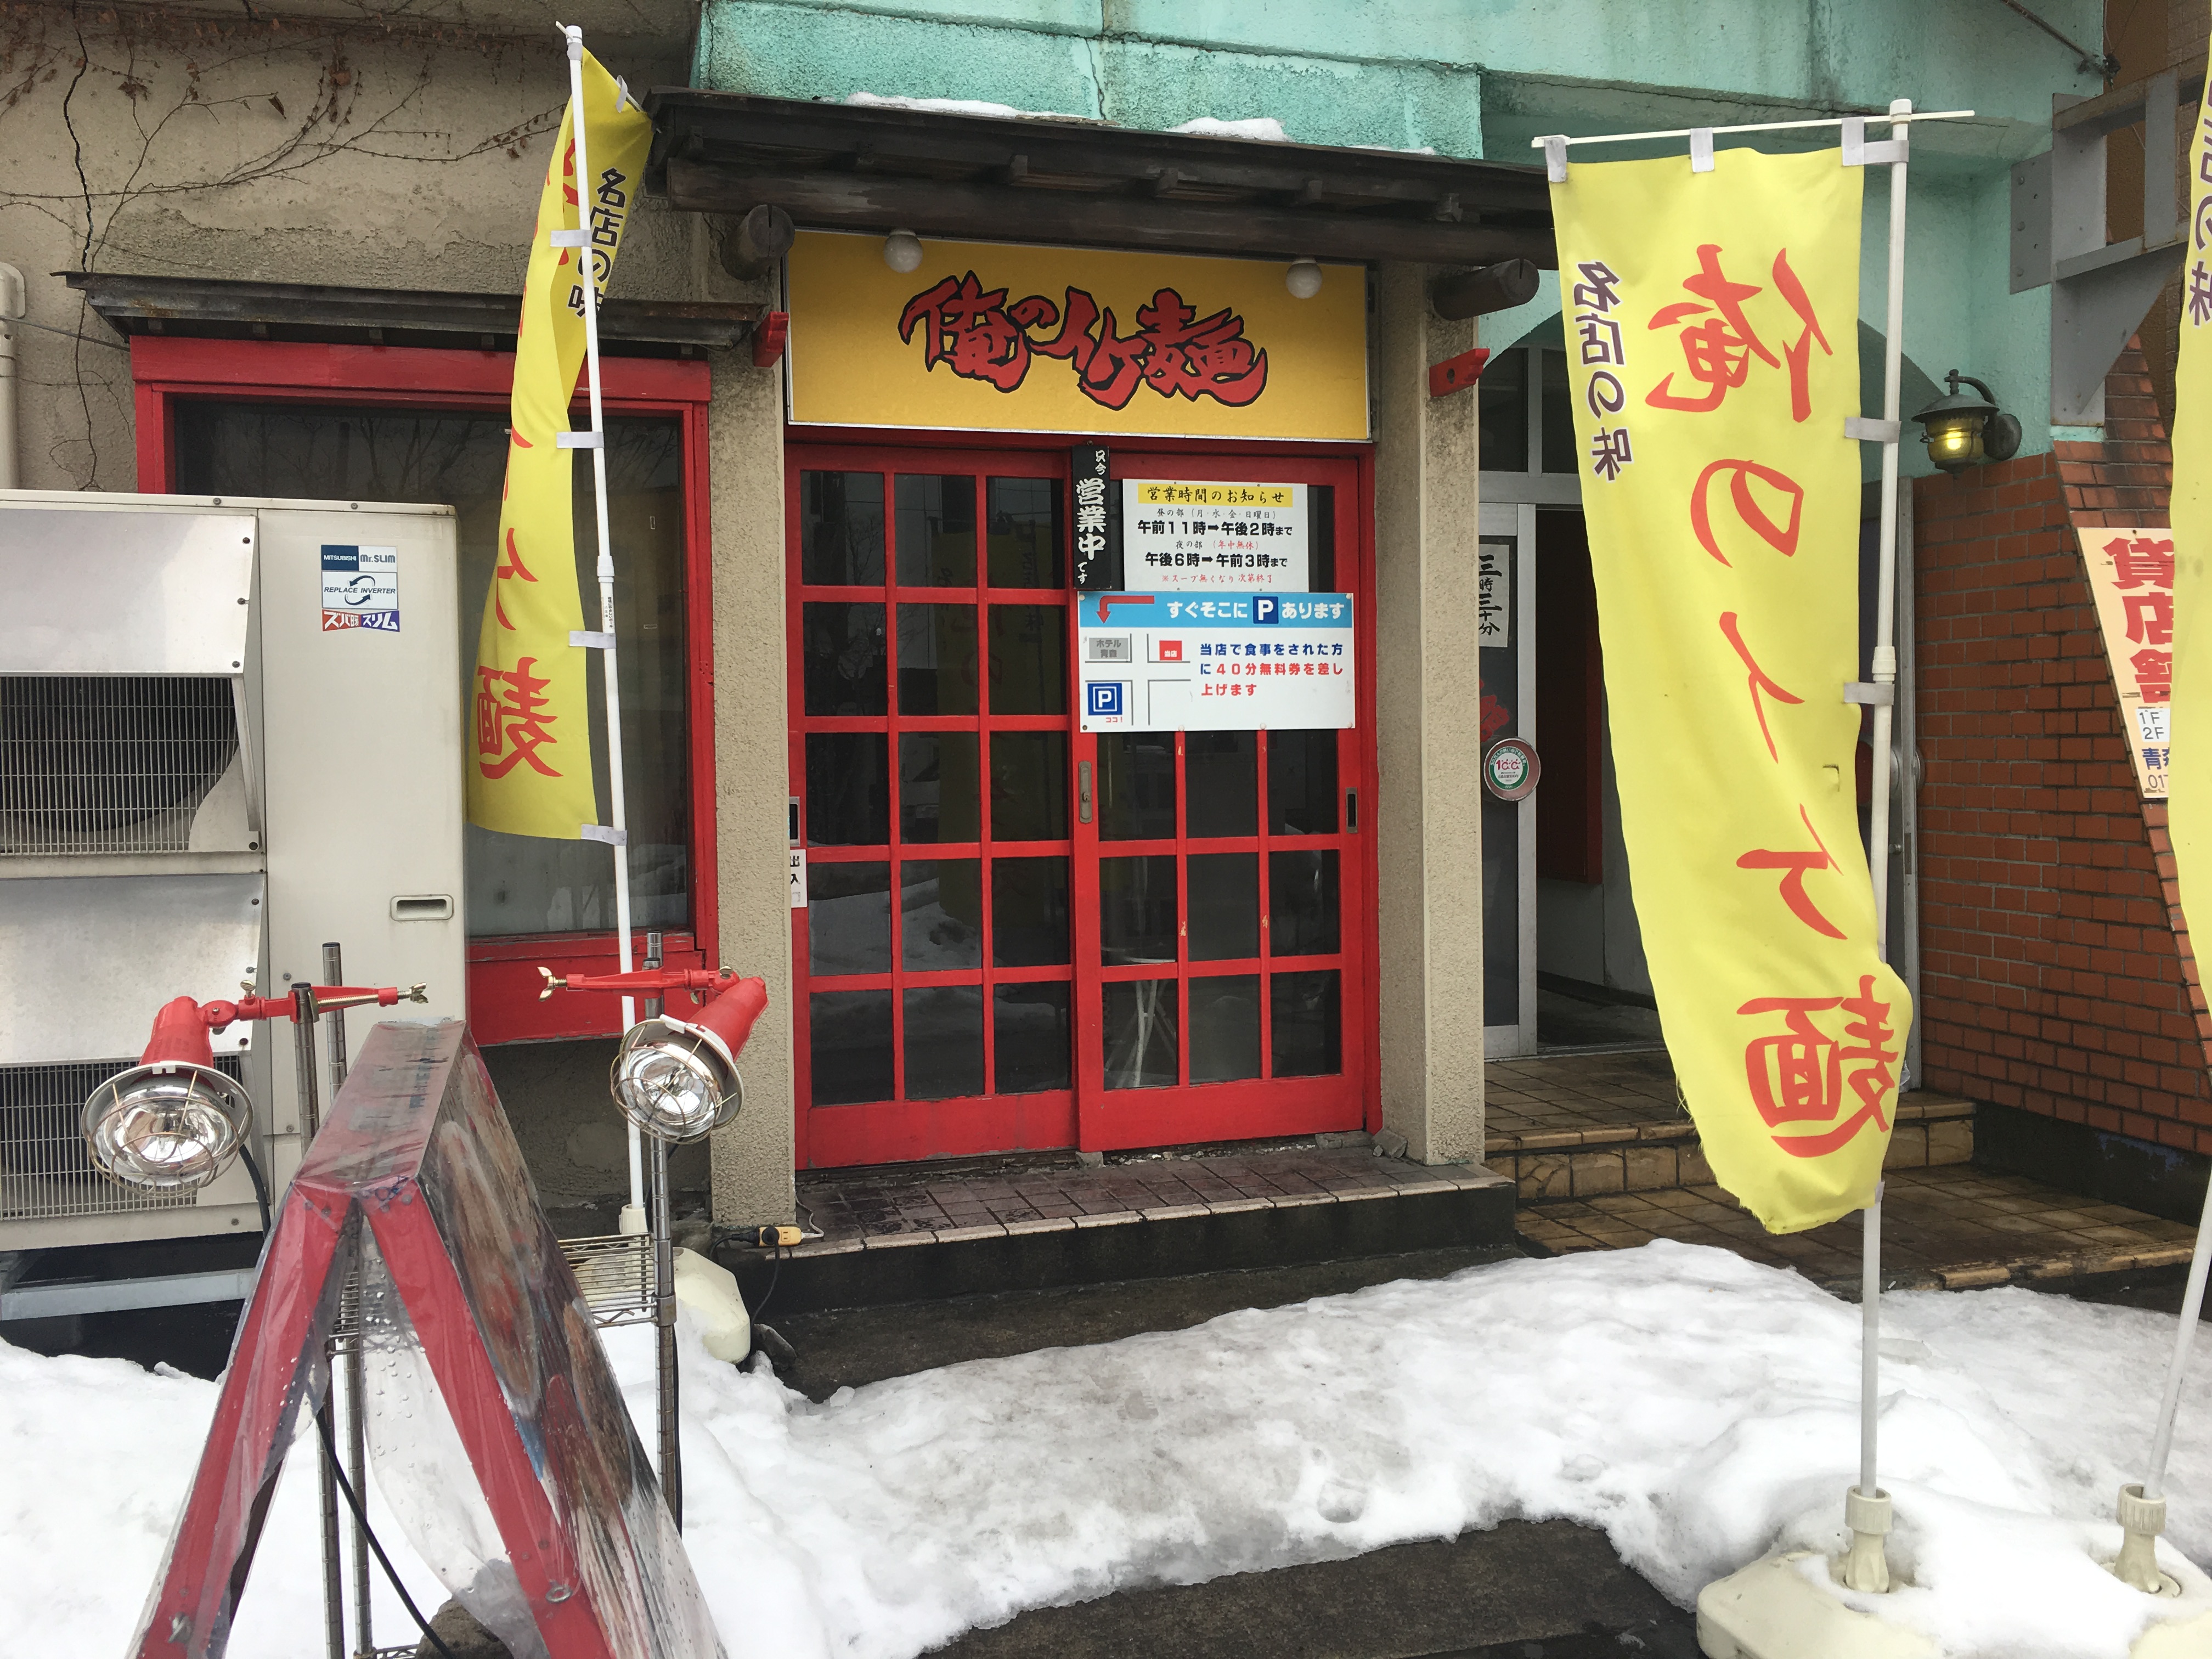 青森 俺のイケ麺のカルボナーラーメン 旅 食べ歩き ときどきクッキング